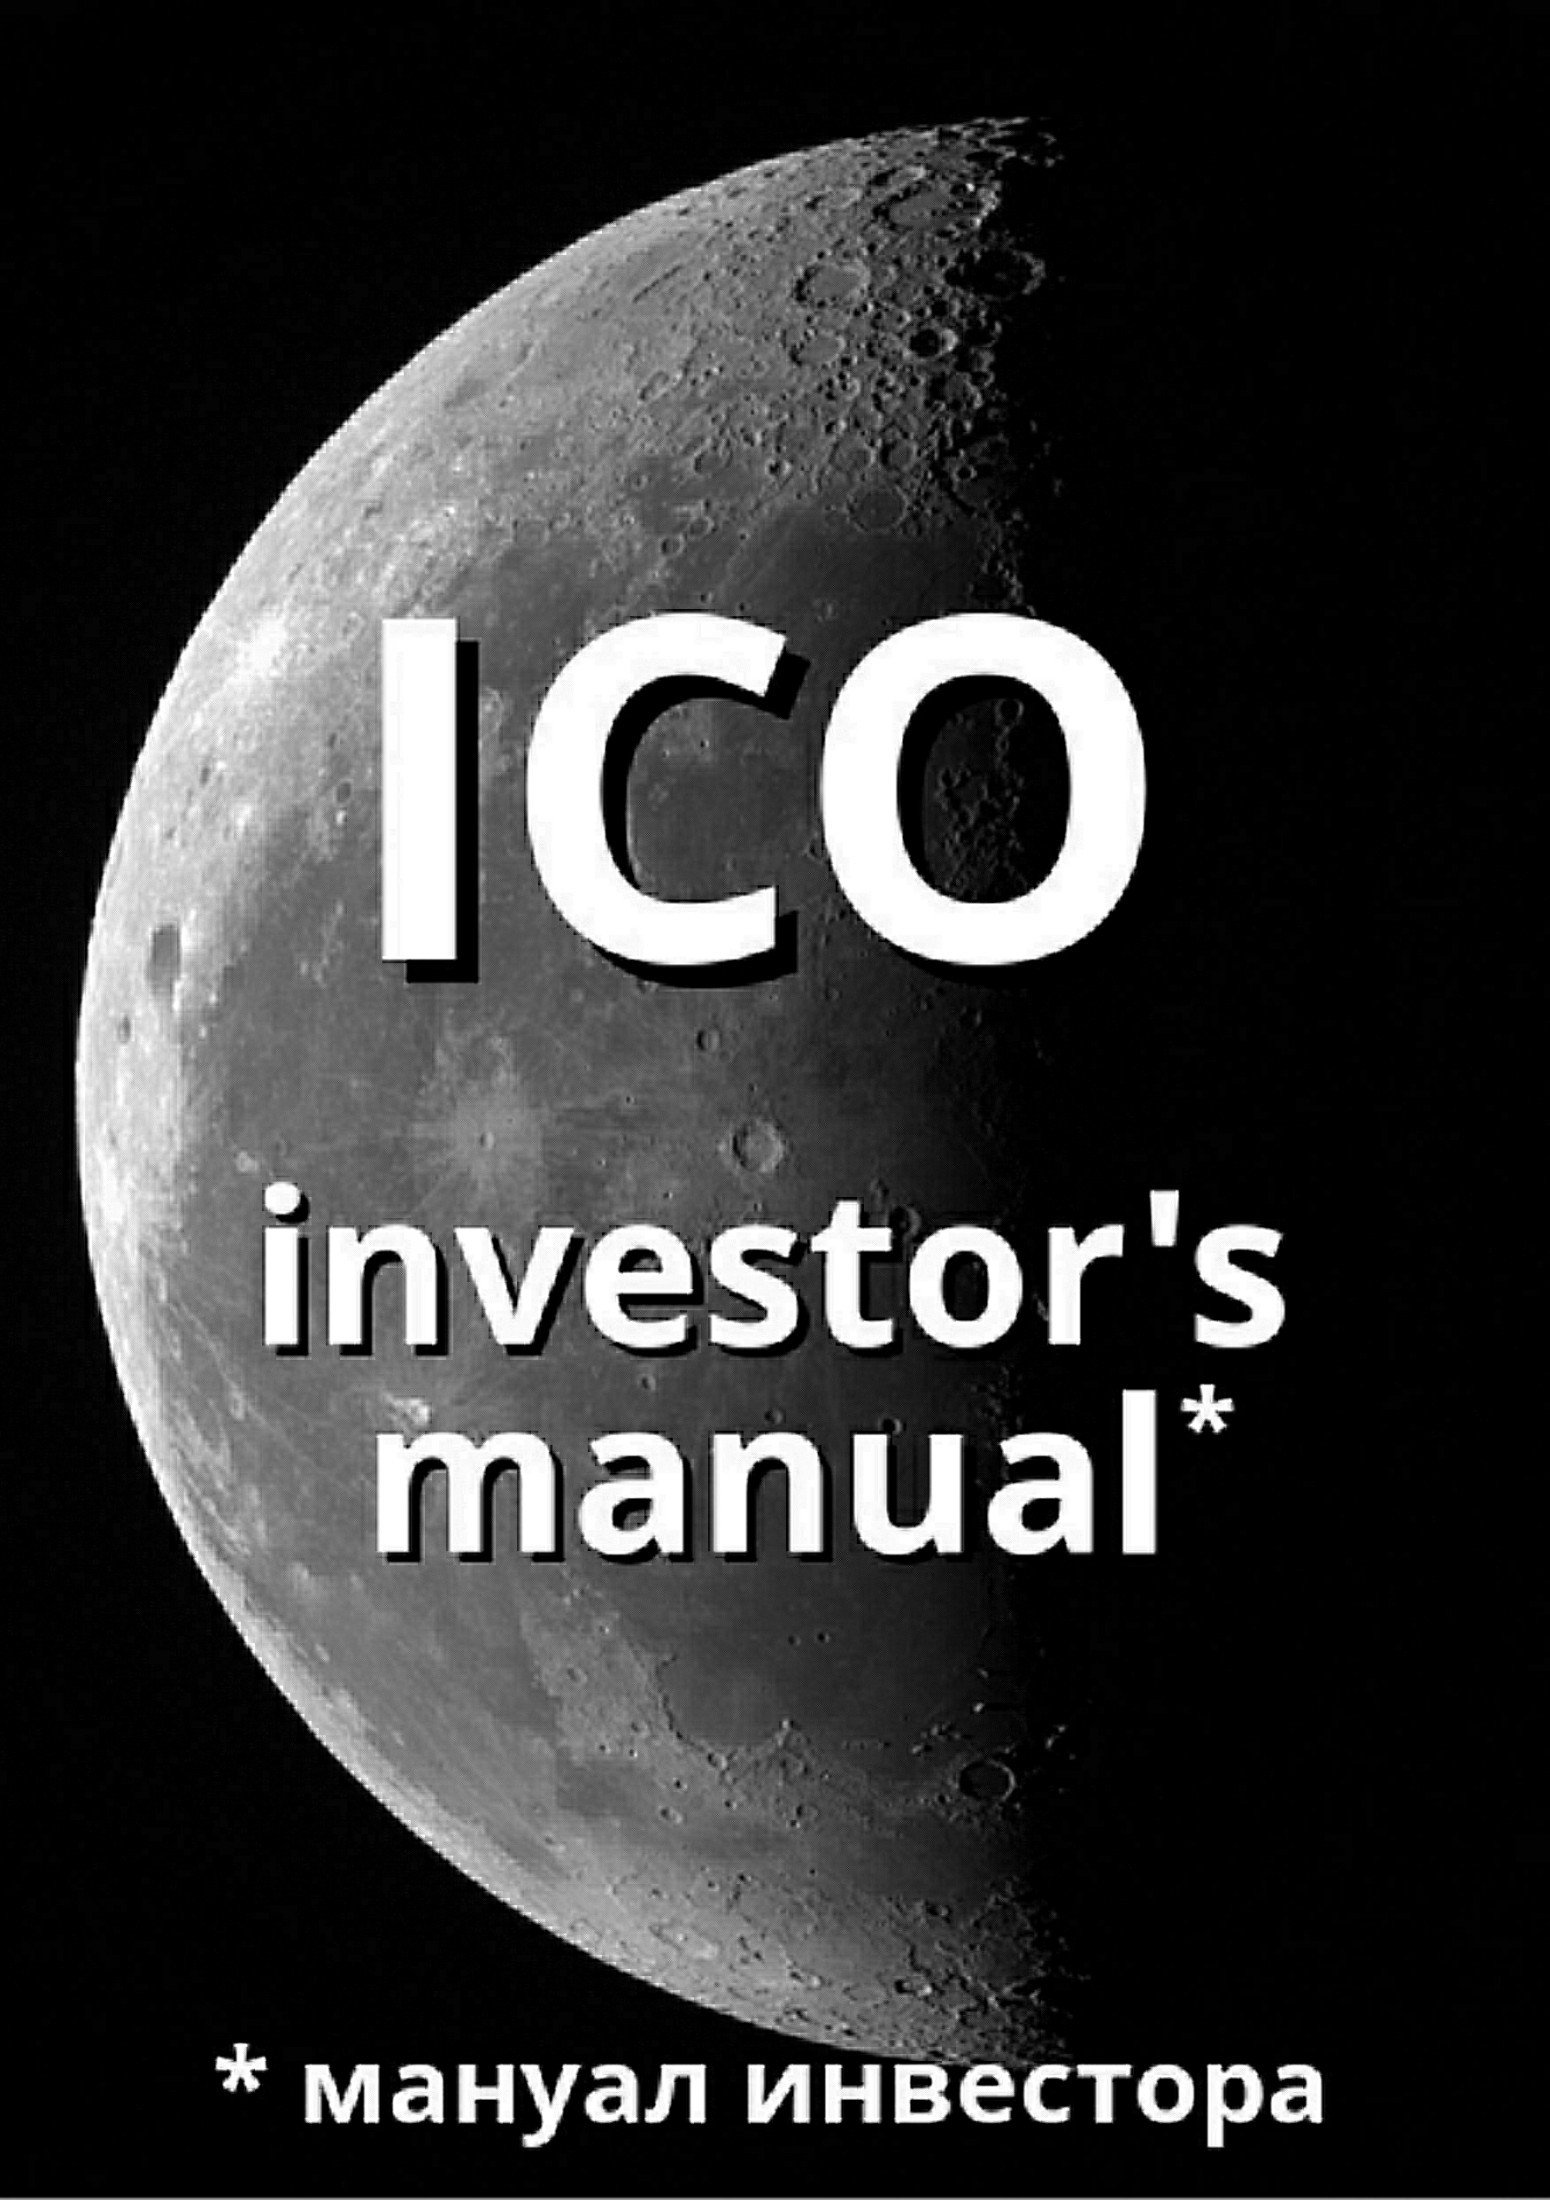 Книга ICO investor's manual (мануал инвестора) из серии , созданная Артем Старостин, может относится к жанру Ценные бумаги, инвестиции. Стоимость электронной книги ICO investor's manual (мануал инвестора) с идентификатором 29186585 составляет 129.00 руб.